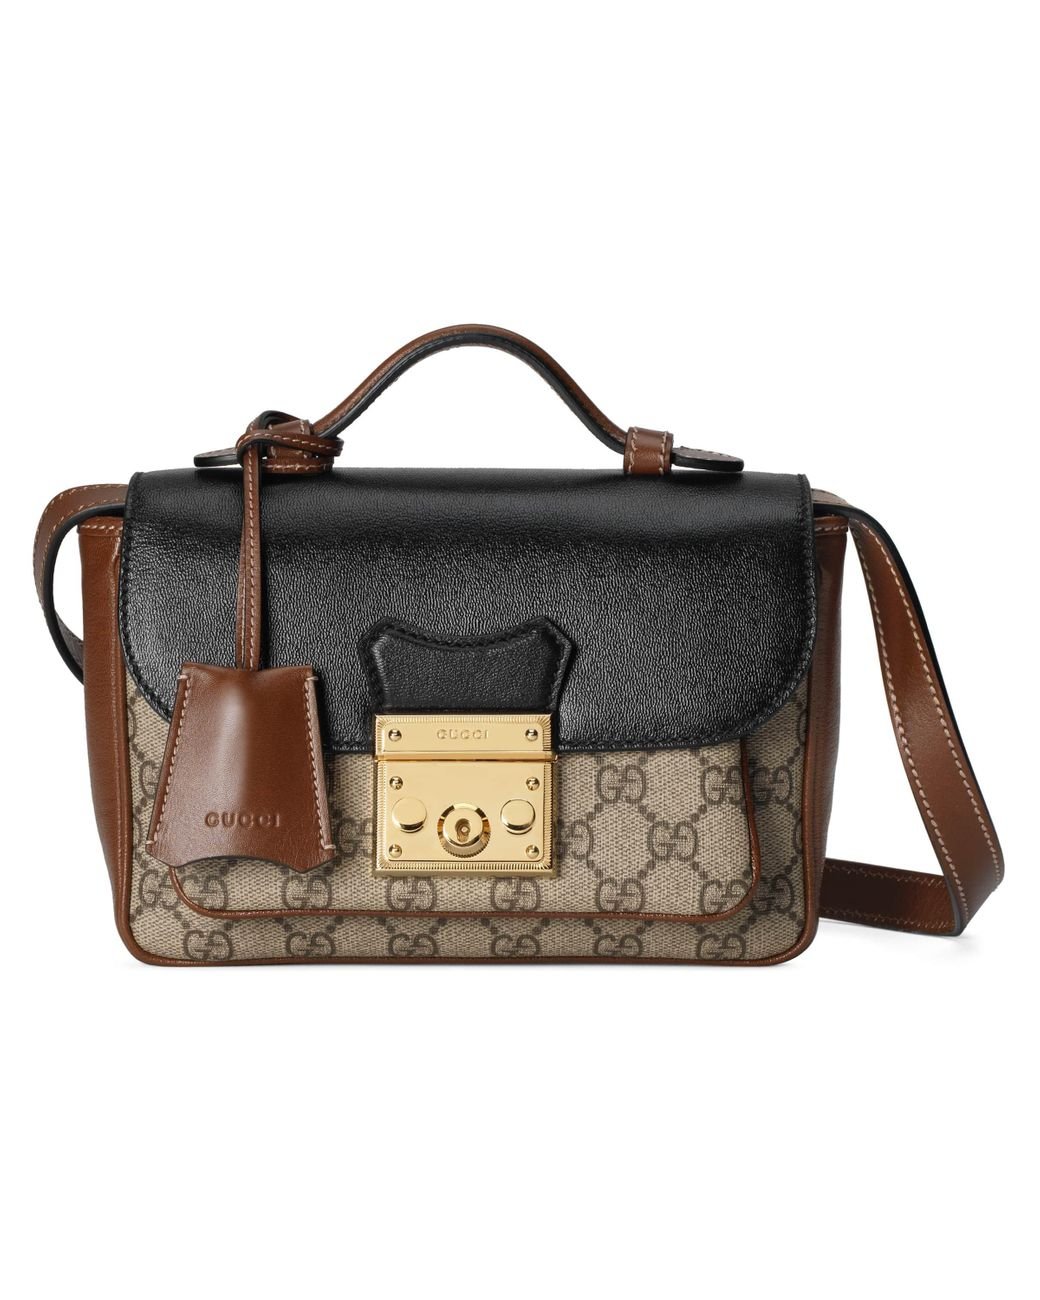 Gucci Padlock Top Handle Bag